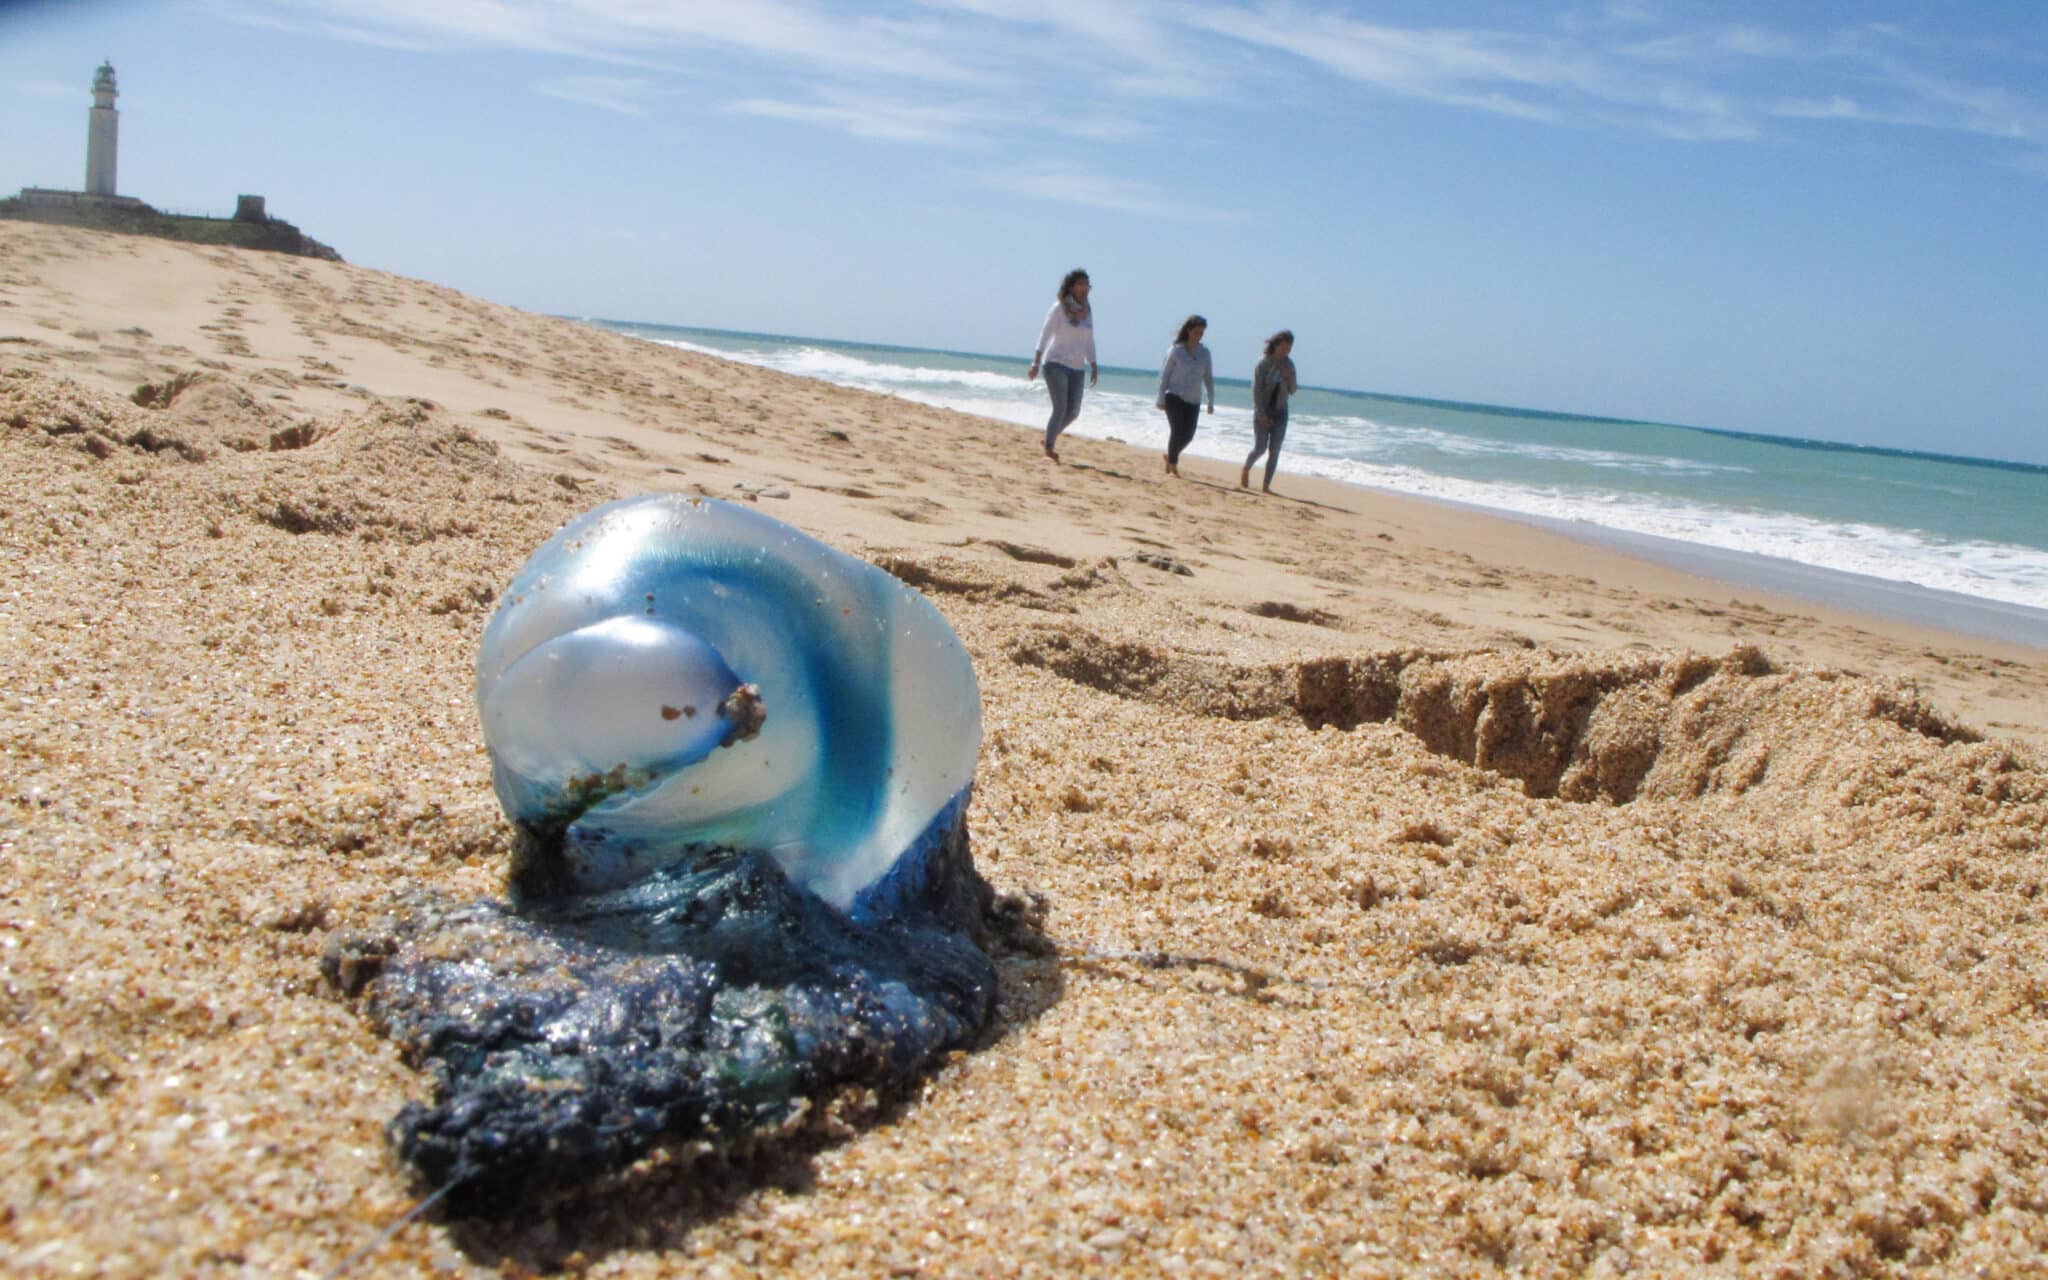 La llegada de medusas complica el baño en las playas de Málaga